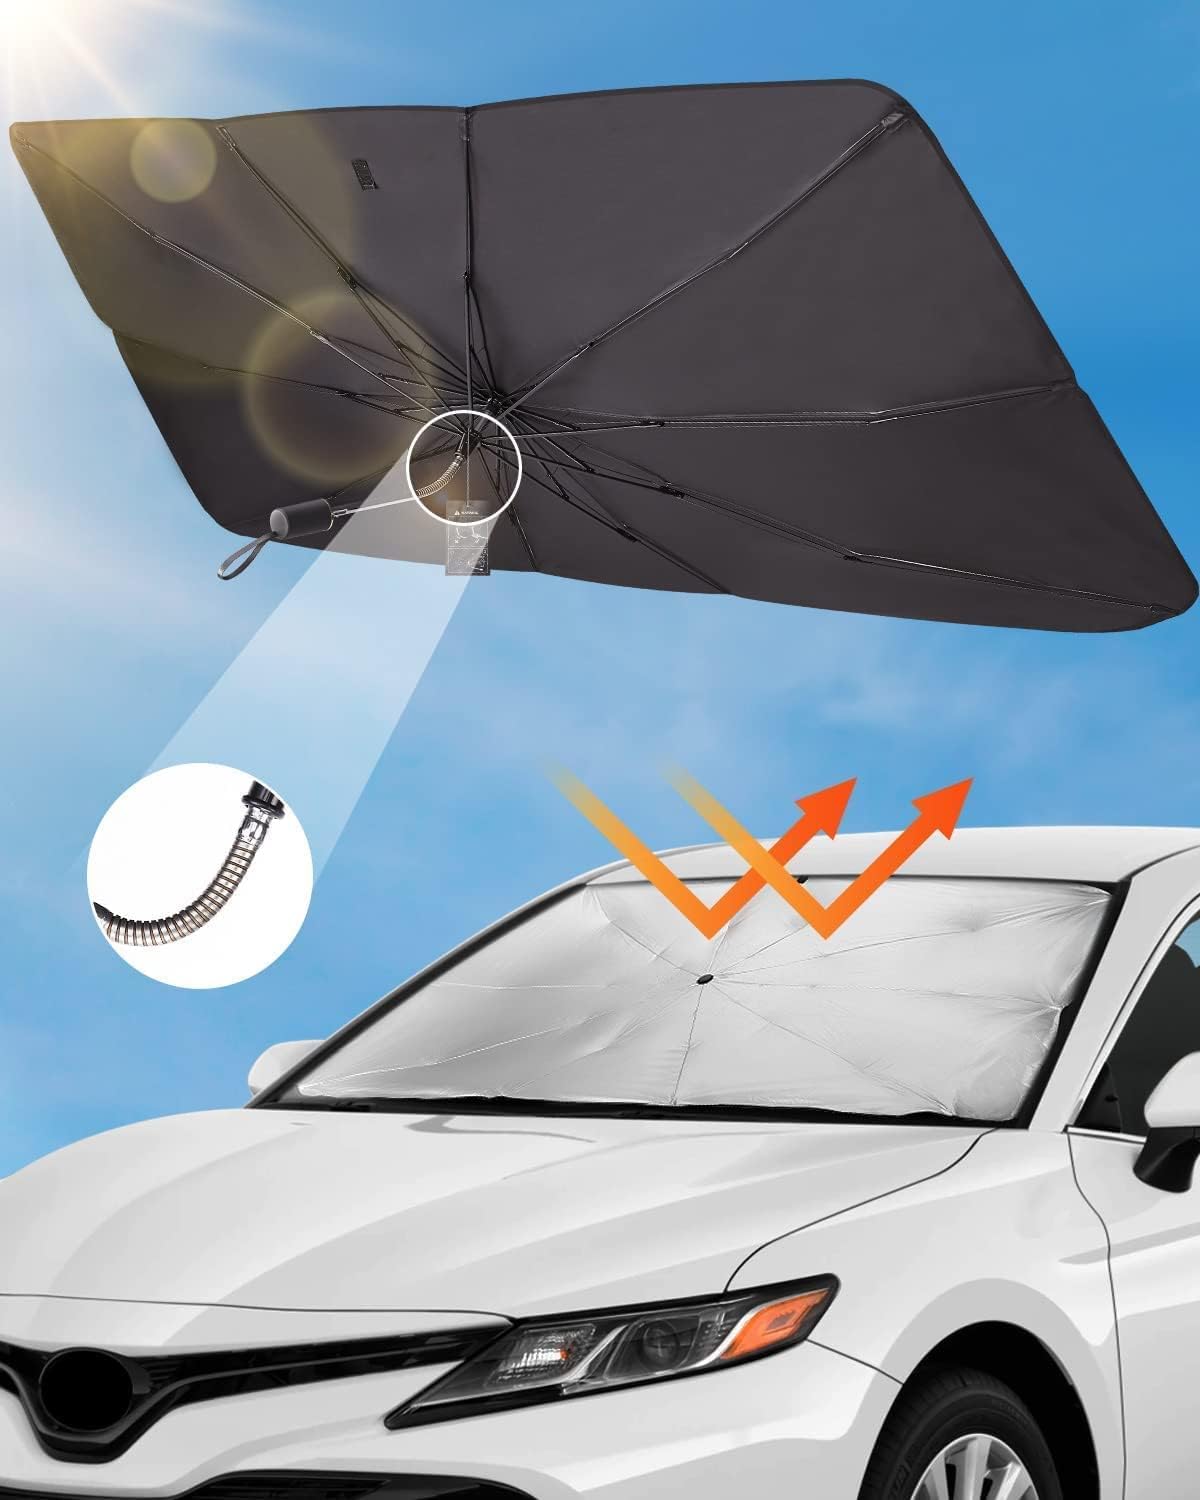 Sonnenschutz Auto Frontscheibe für Freed GB3 GB4 2008-2016, Faltbarer UV-Schutz Sonnenschirm Wärmeisolierung Frontscheibenabdeckung von DdaiXQ